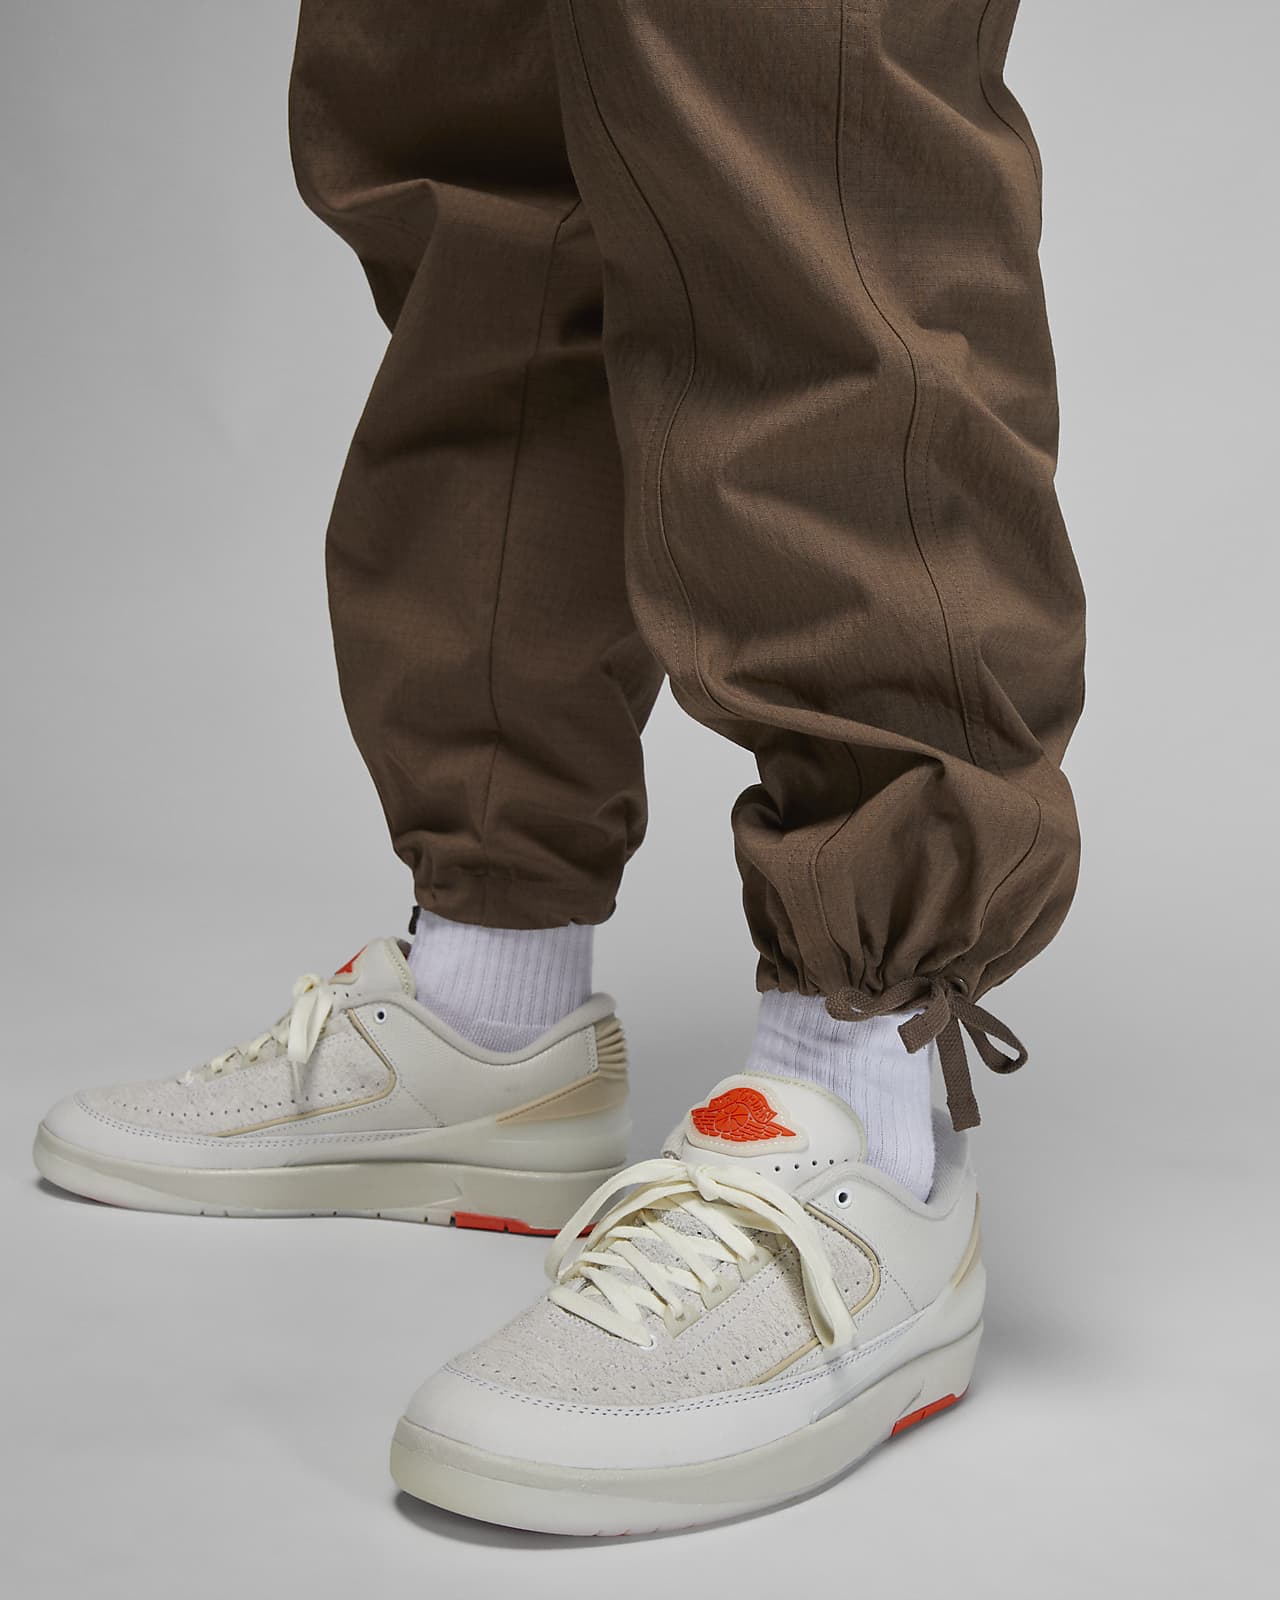 Jordan Pantalones Chicago de pana - Mujer. Nike ES